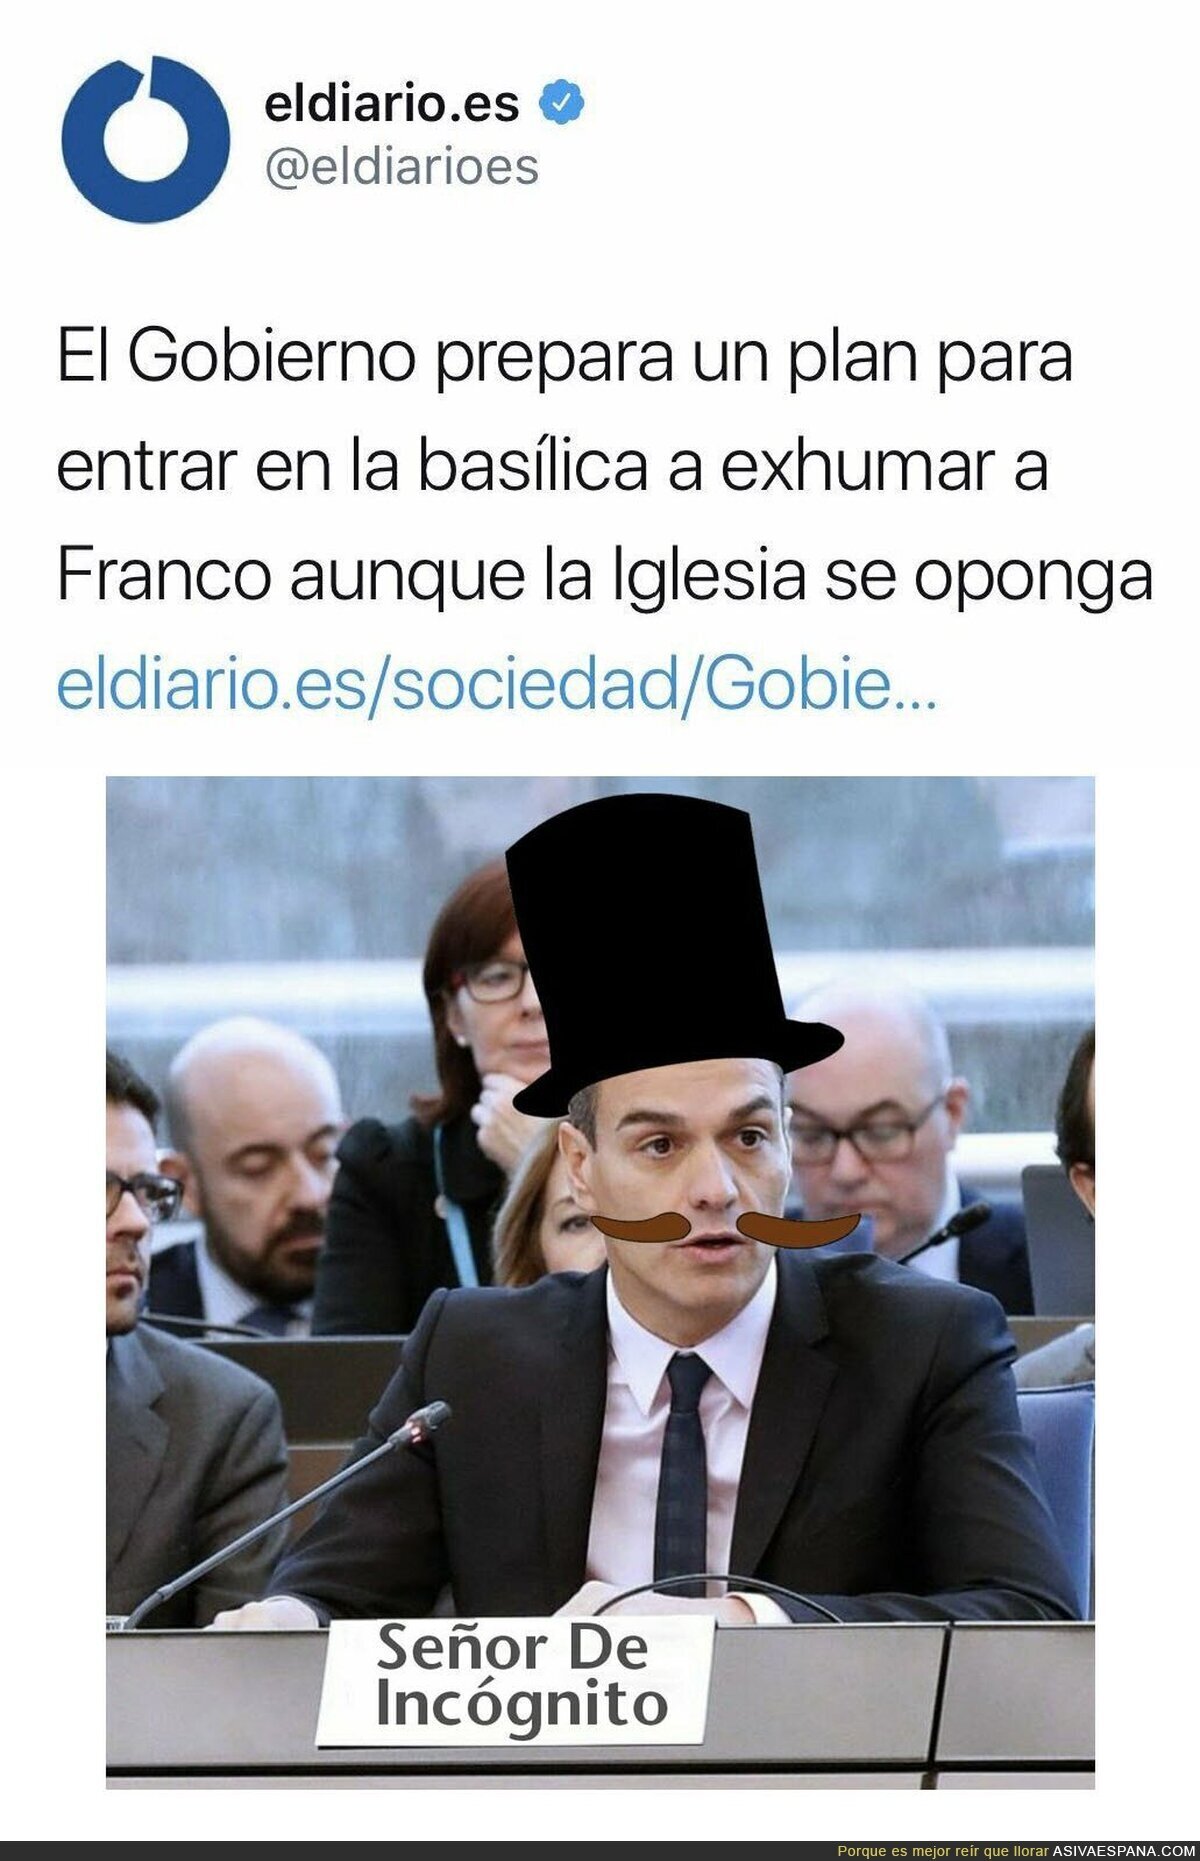 El plan de Pedro Sánchez sin fisuras